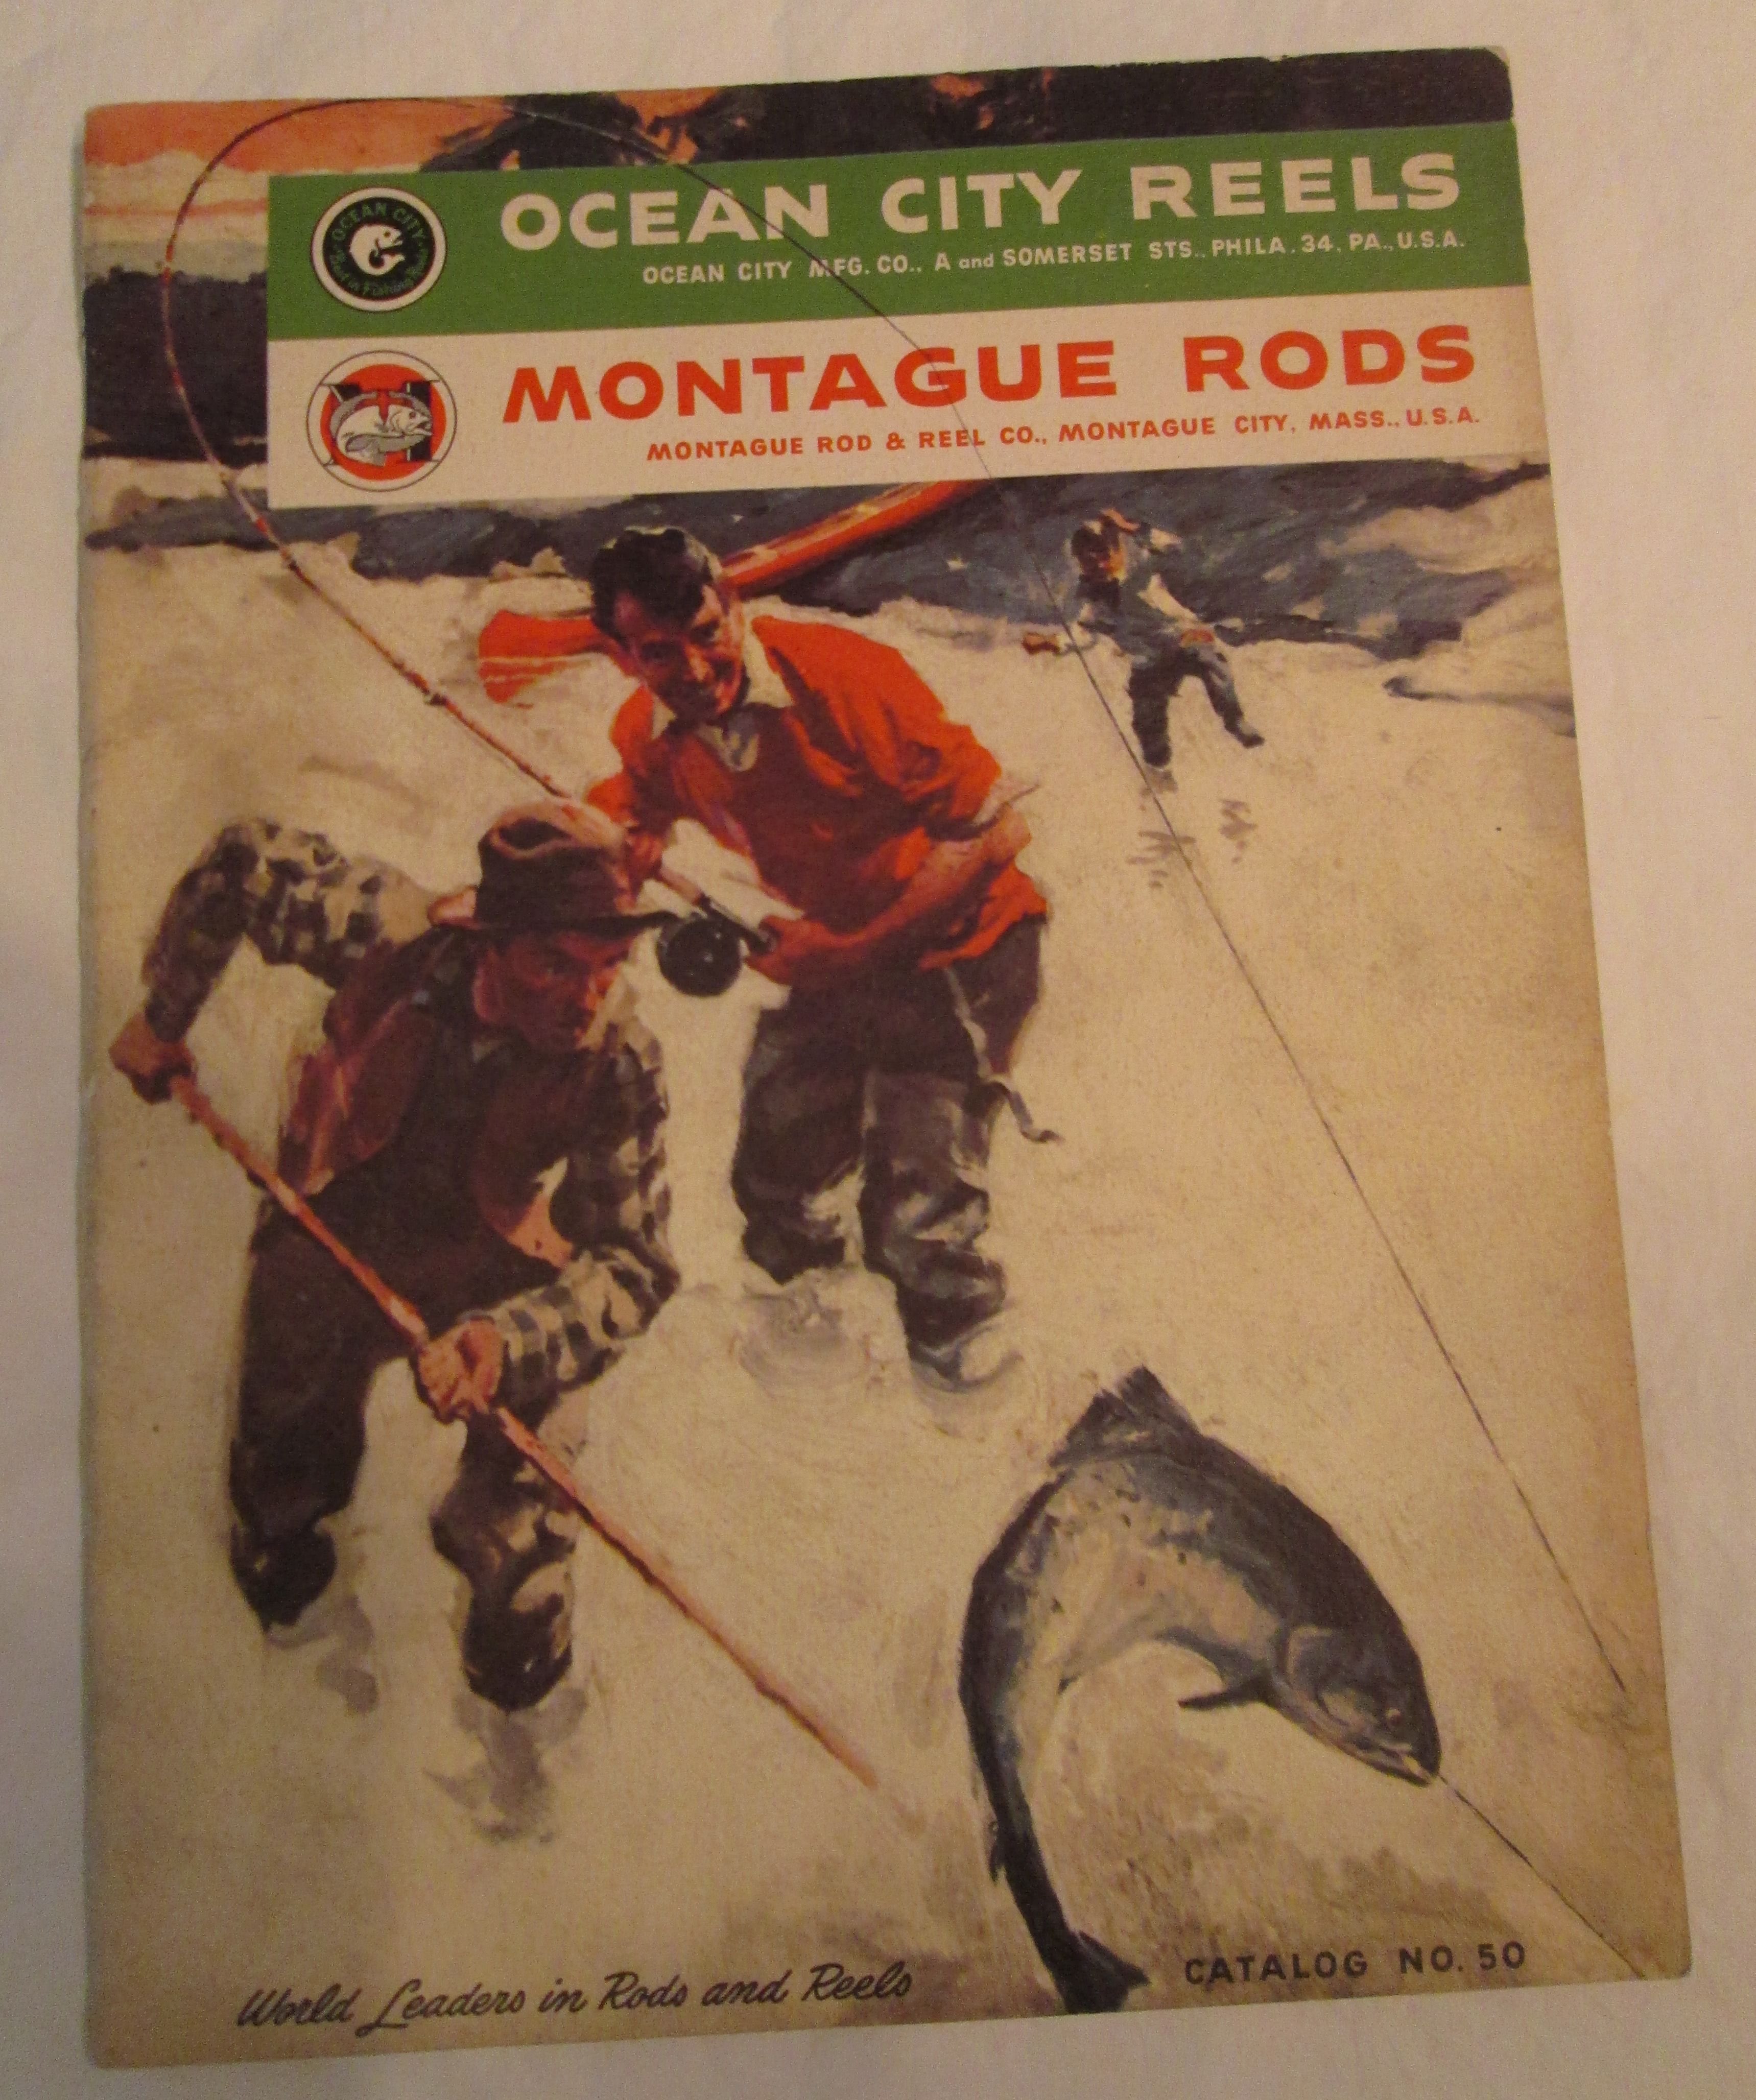 Montague Rods, Ocean City Reels Catalog No. 50